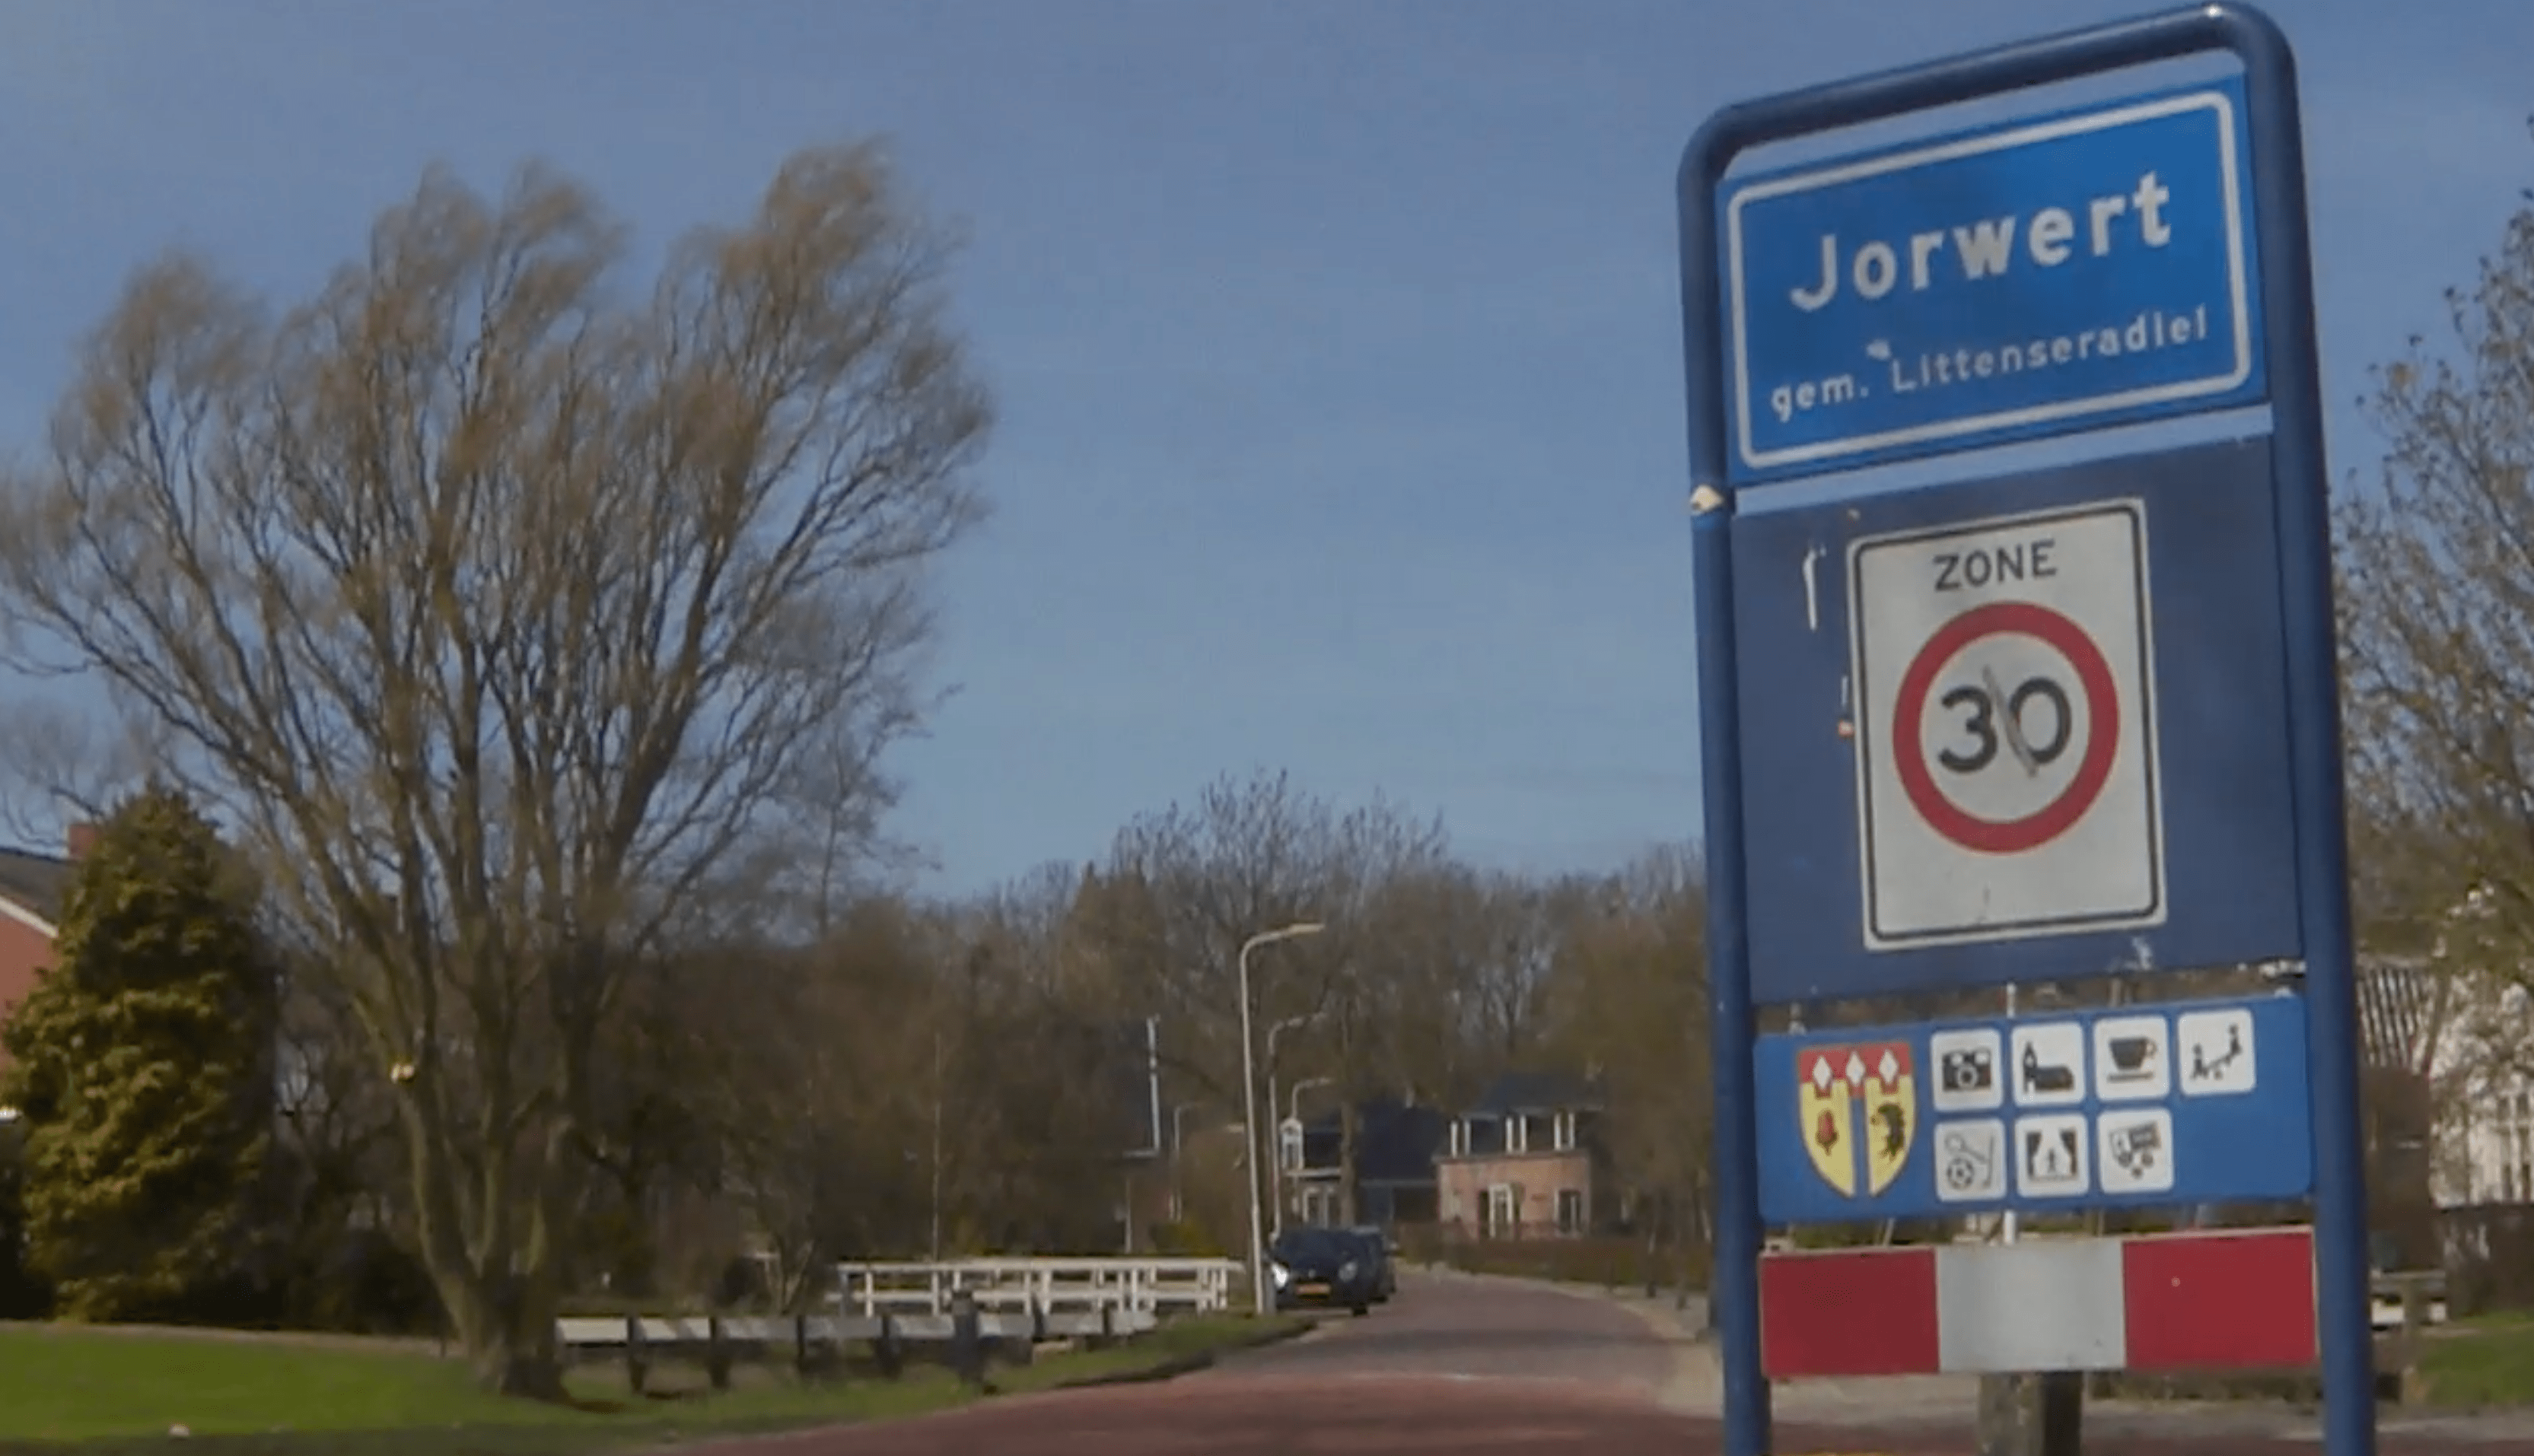 Как транспортната бедност става осезаема в Jorwerd